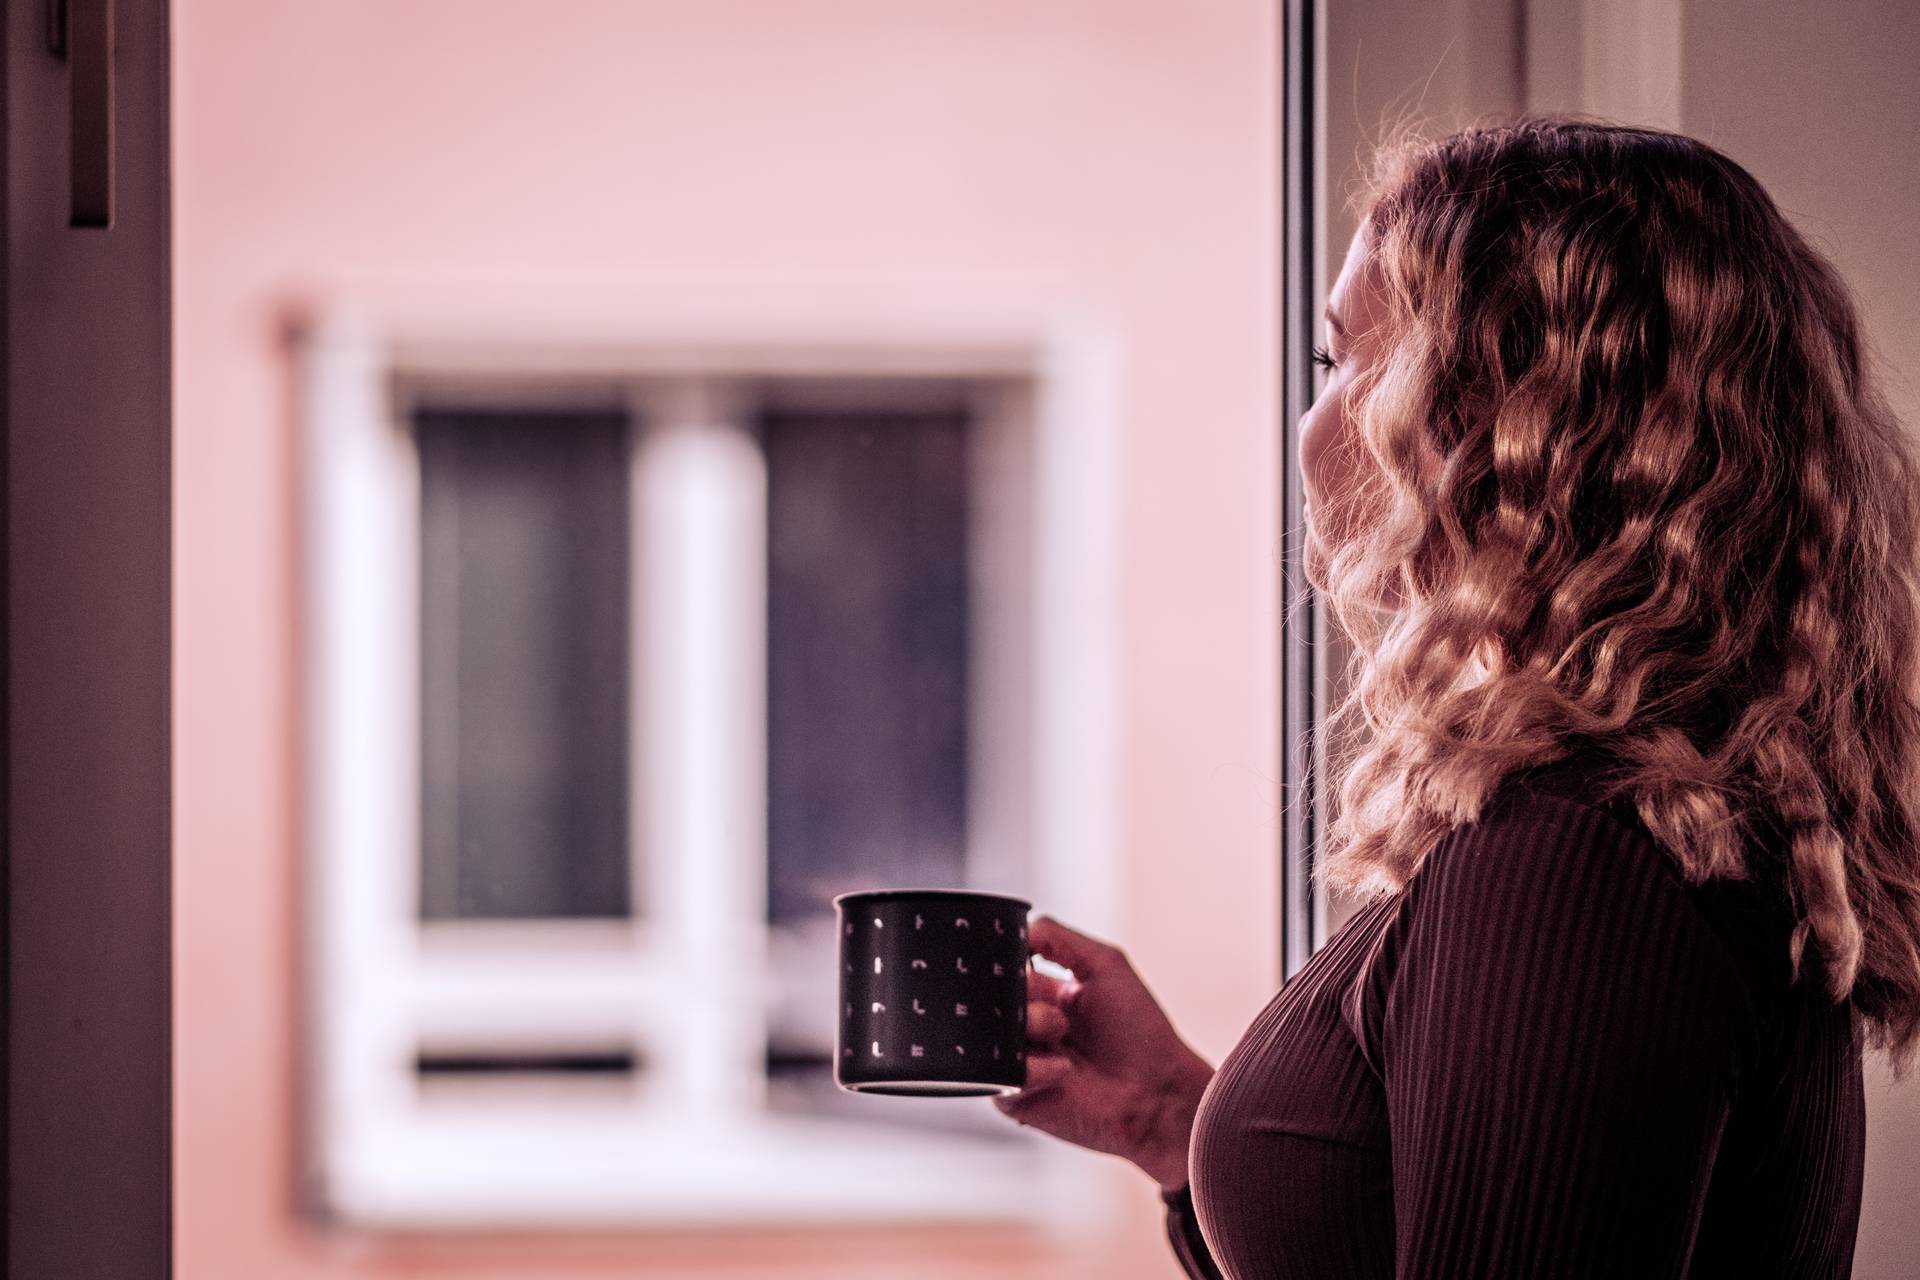 Loihde - Person having coffee at a window - DSCF2796 - 1920 x 1280